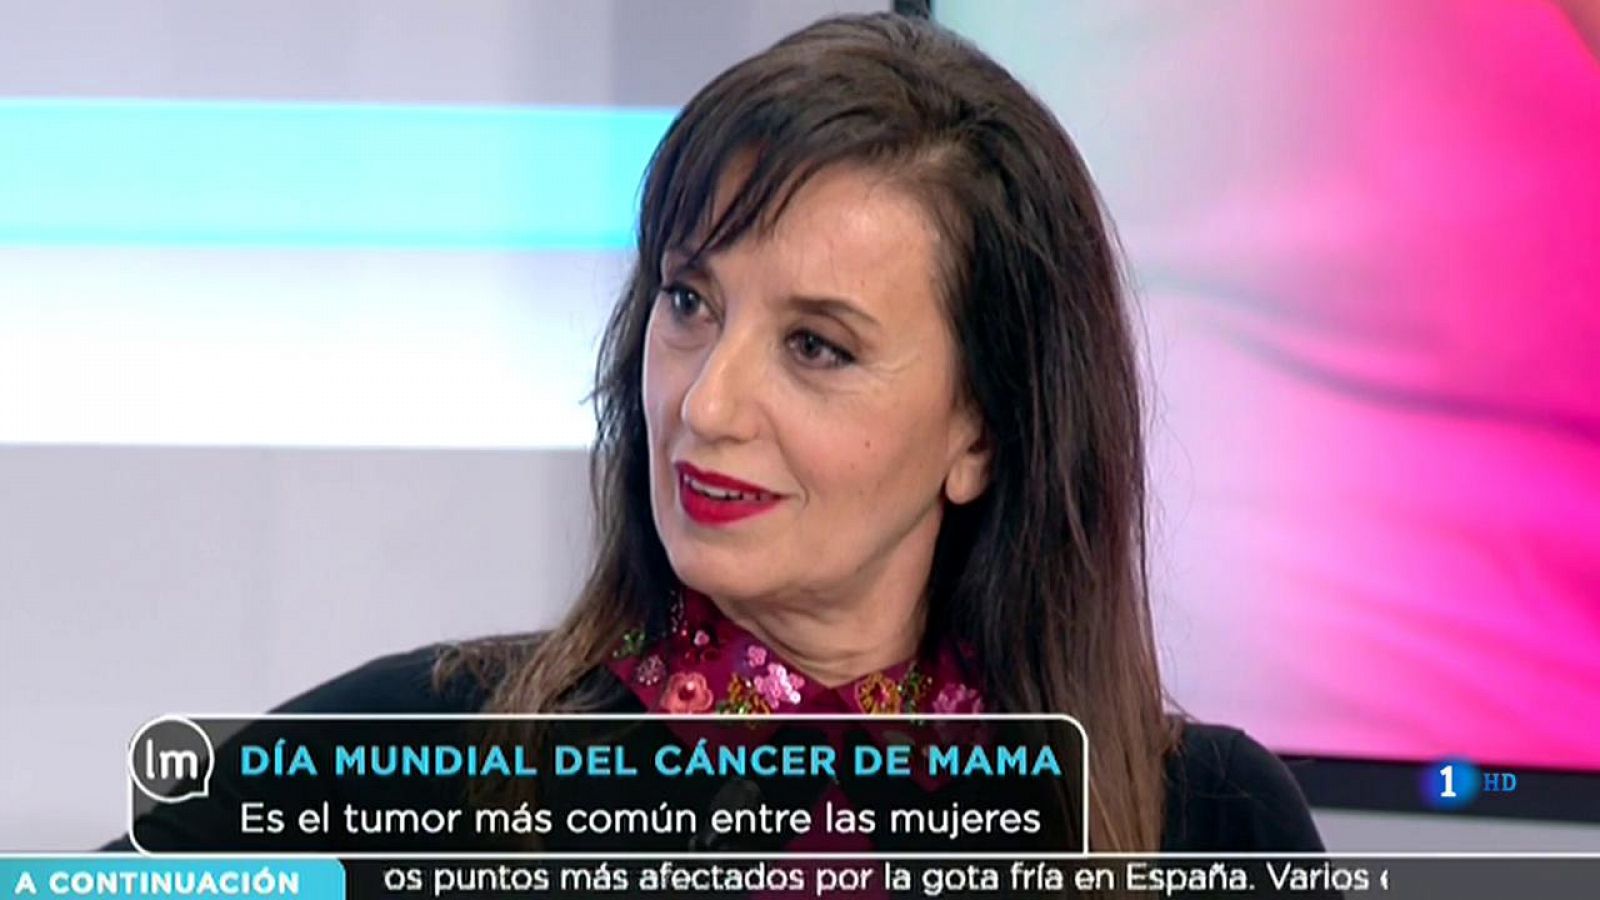 La Mañana - Luz Casal: "Siempre he vivido la enfermedad como parte de la vida"